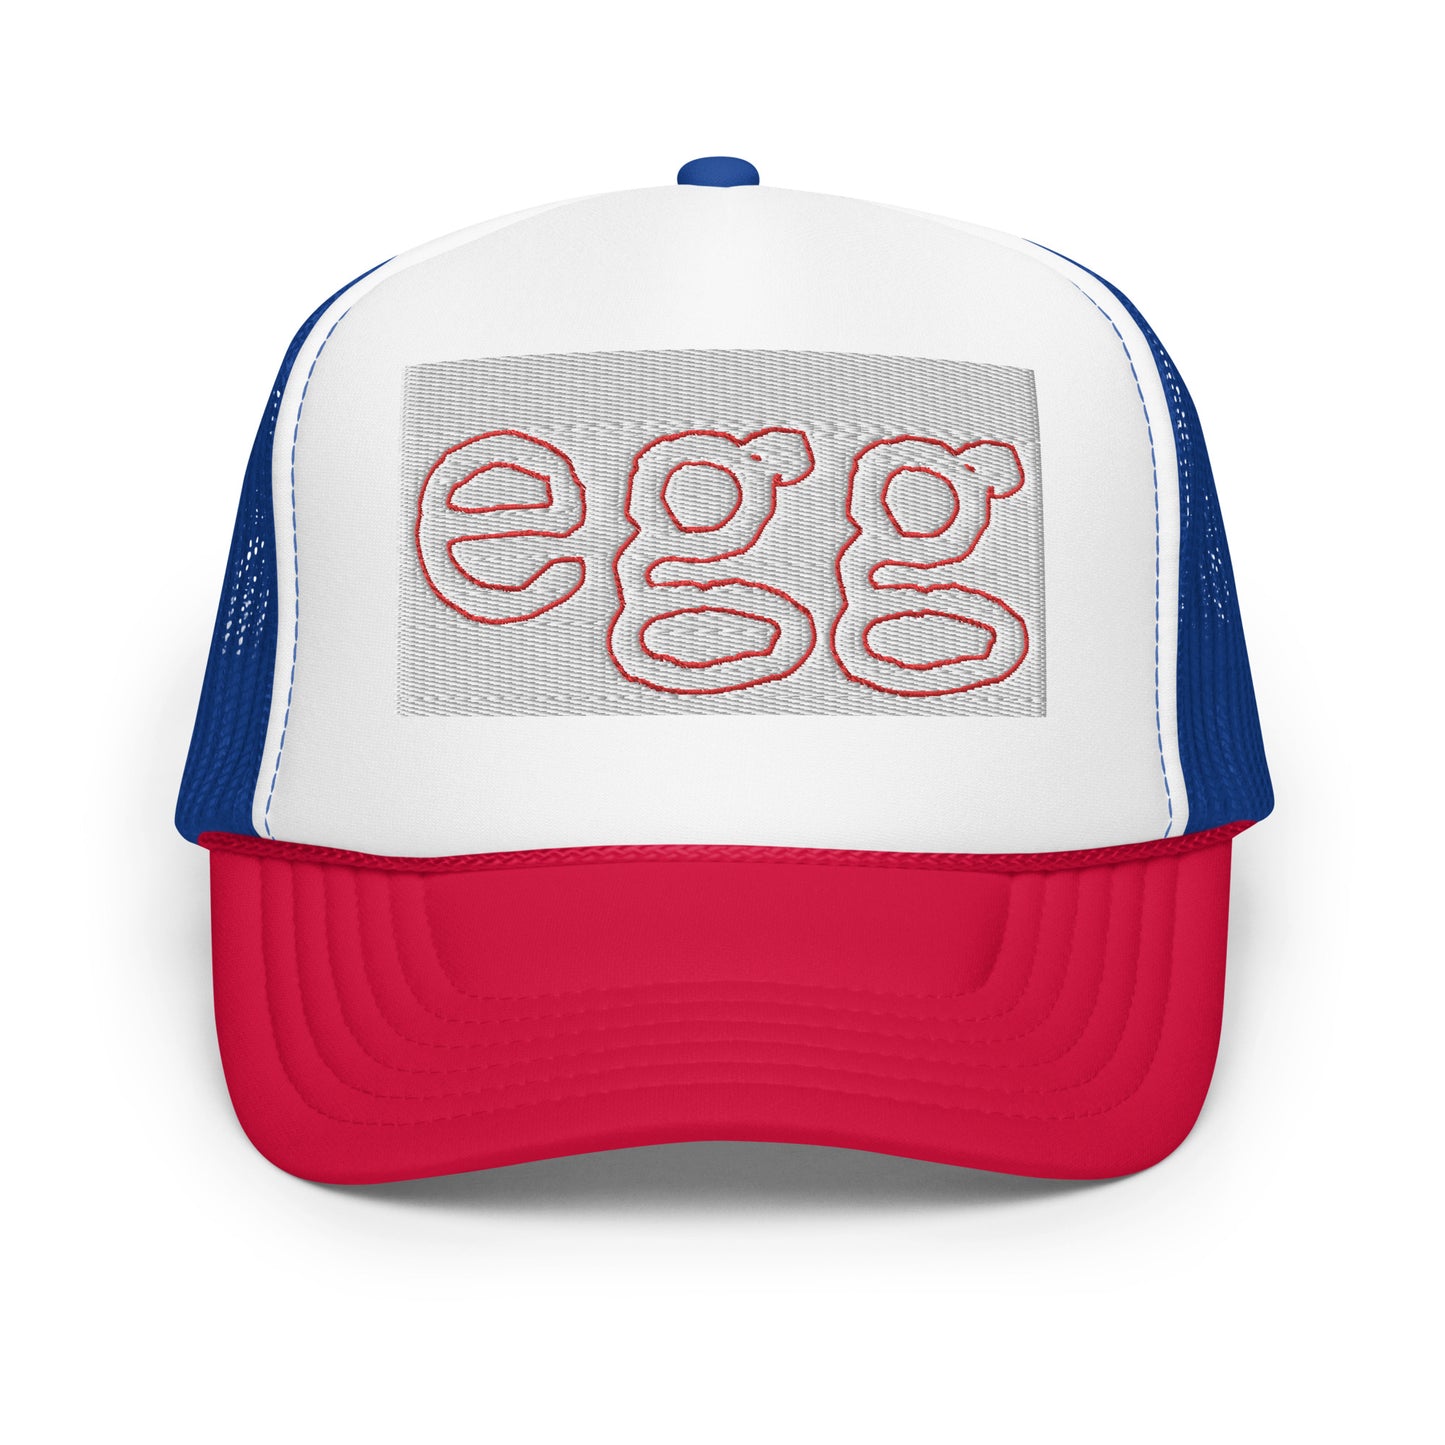 Nest EGG Foam trucker hat